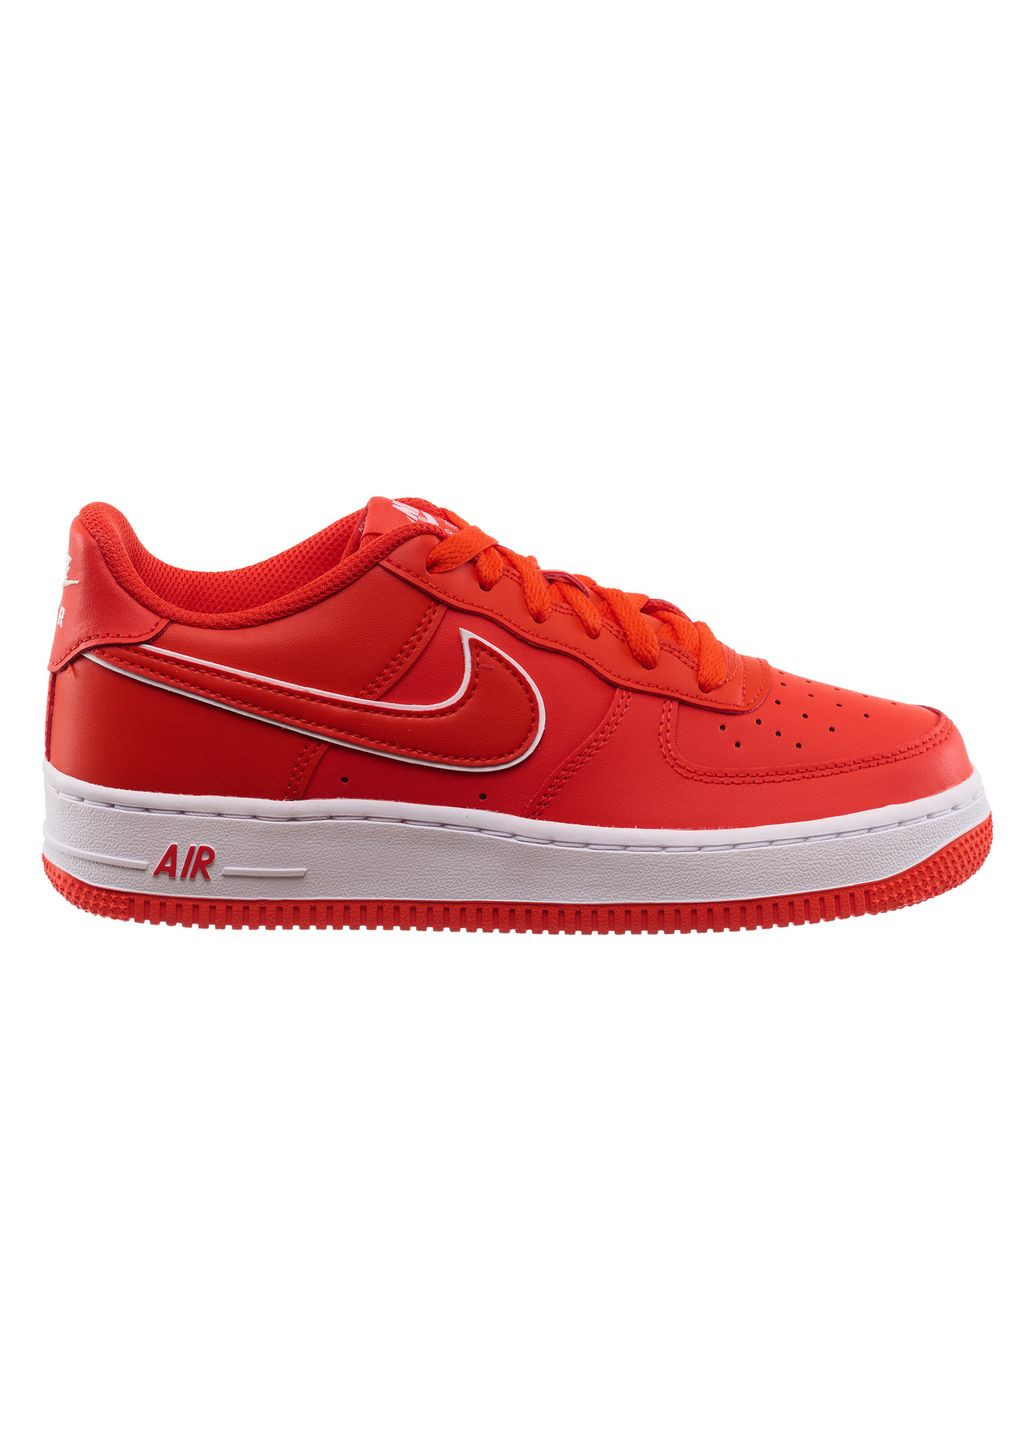 Красные демисезонные кроссовки подростковые air force 1 (gs) (dx5805-600) Nike